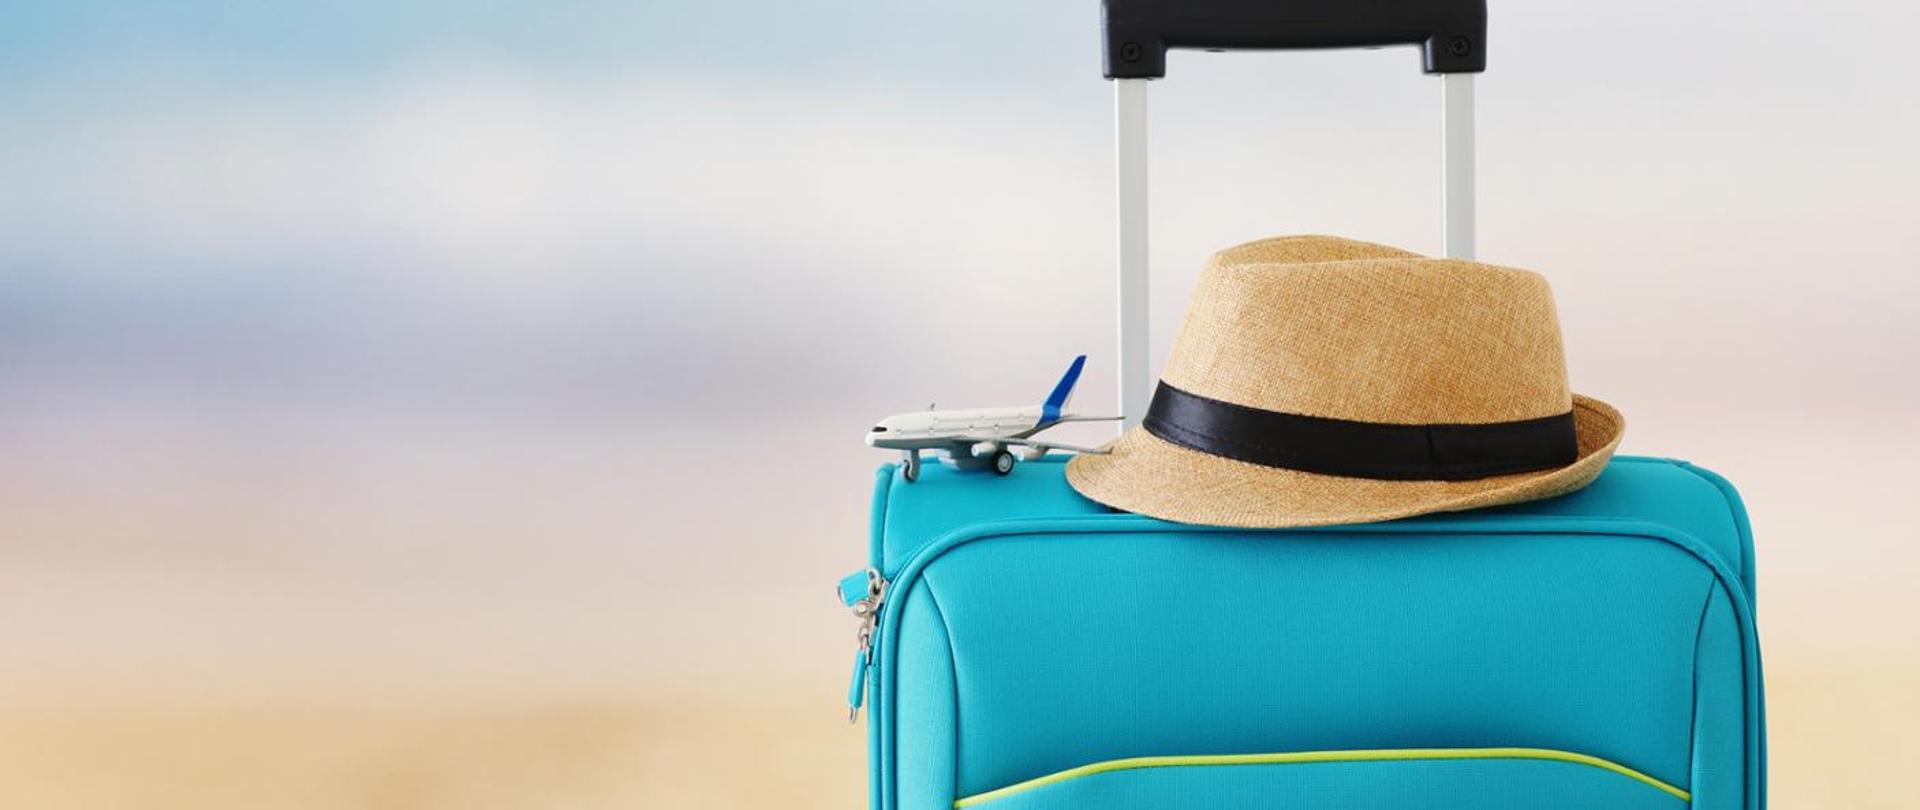 Błękitna walizka z czarną rączką. Na walizce żółty, letni kapelusz z czarną przepaską. Koło kapelusza mały samolot podróżny.